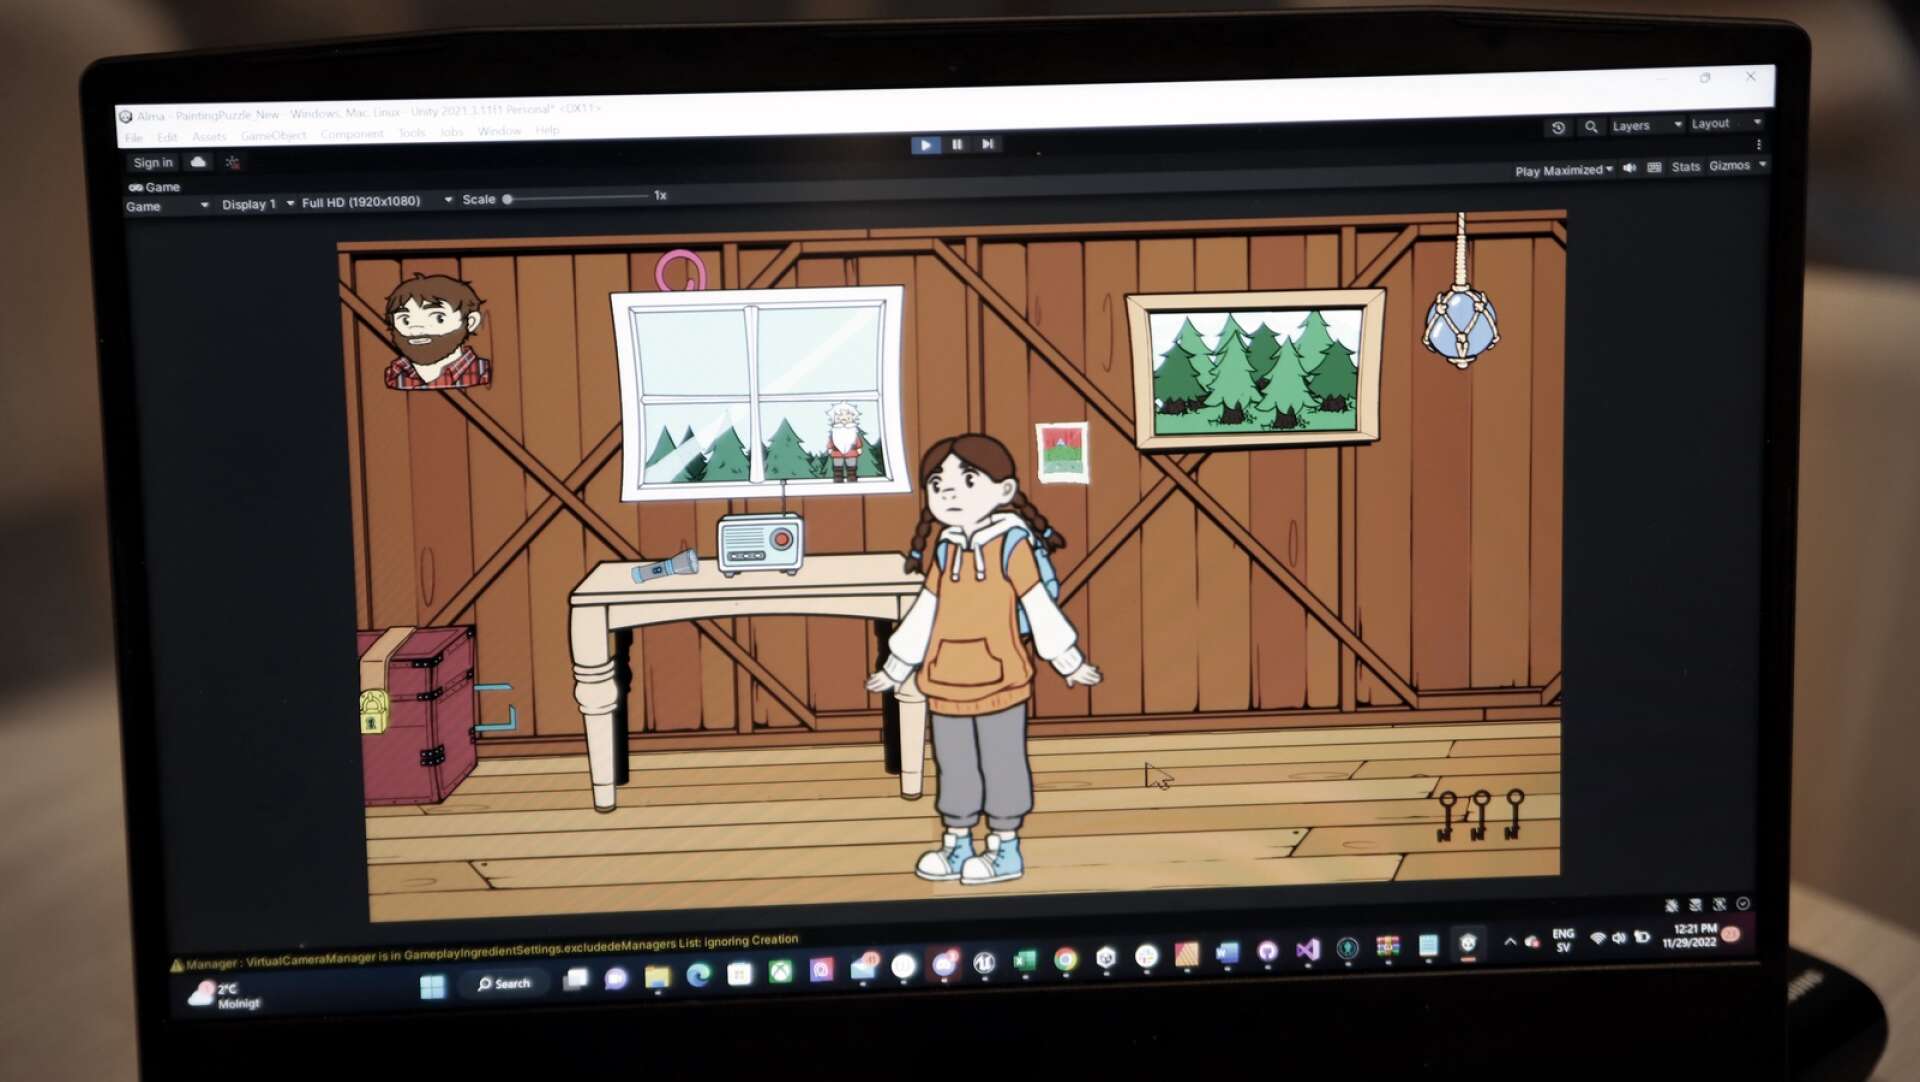 Datorspelet ska ge flickor i ung ålder möjlighet att relatera till en huvudkaraktär med autism och adhd.